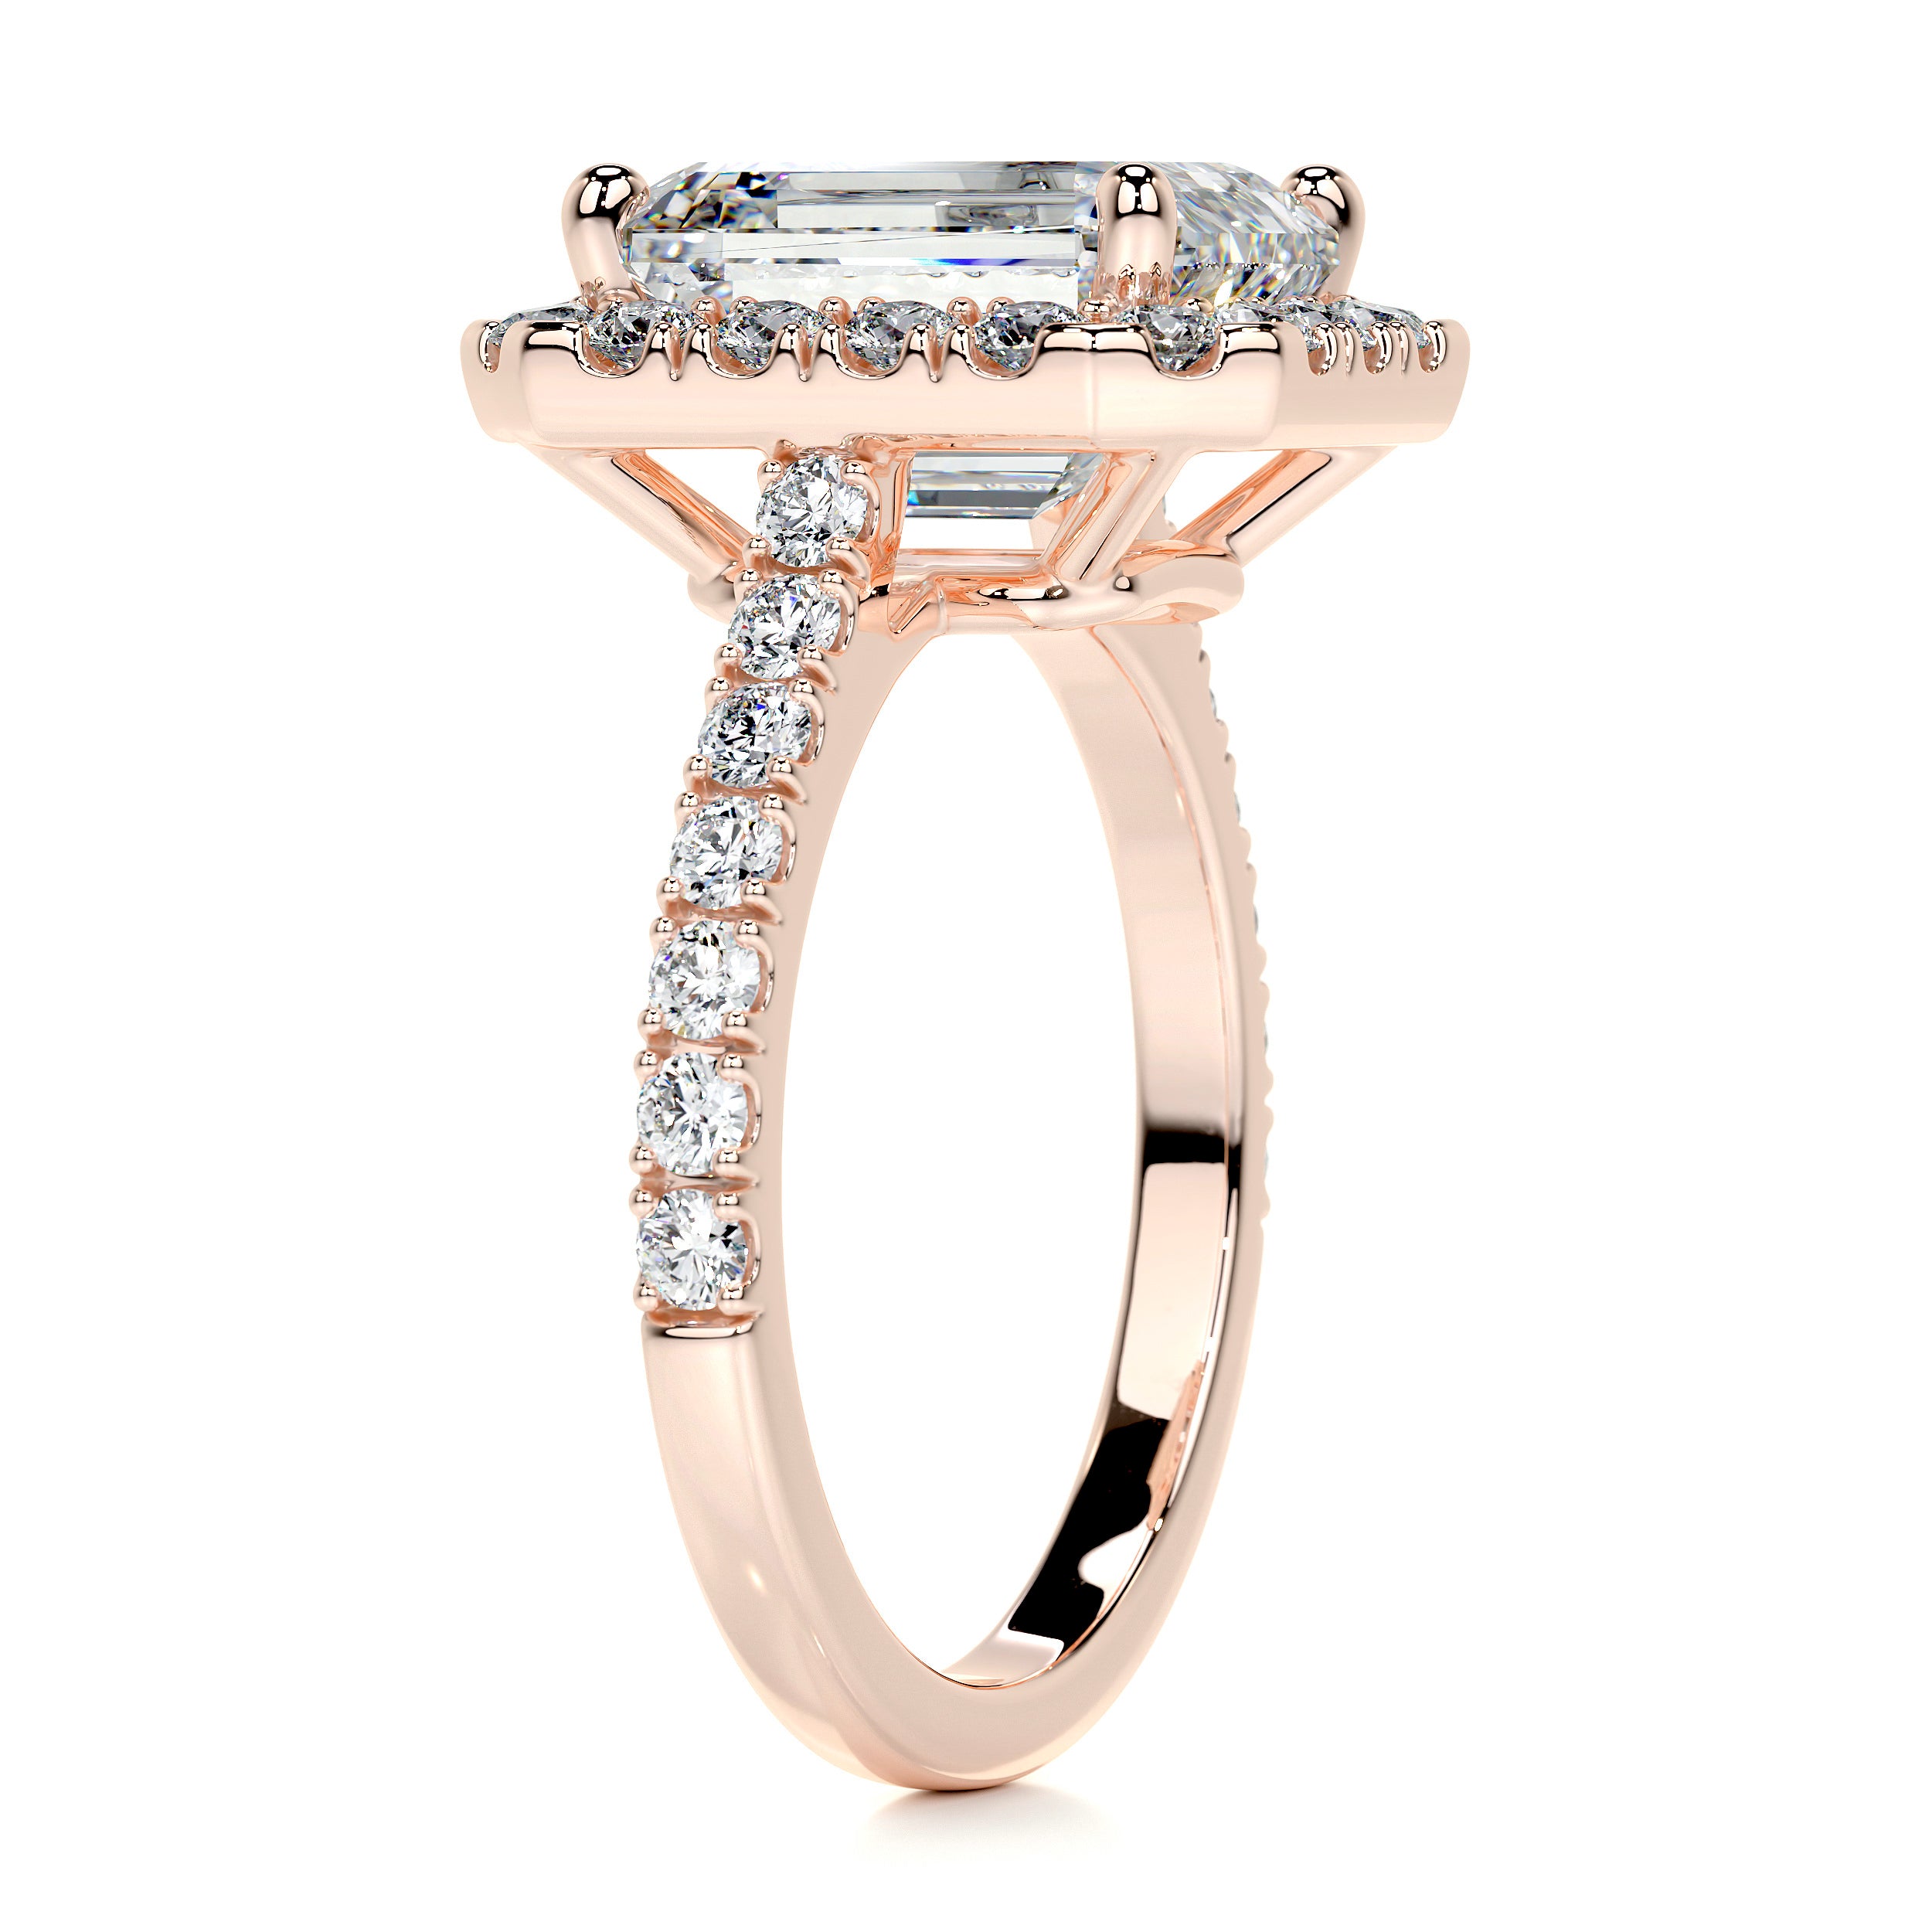 Zoey Diamond Engagement Ring   (2 Carat) -14K Rose Gold